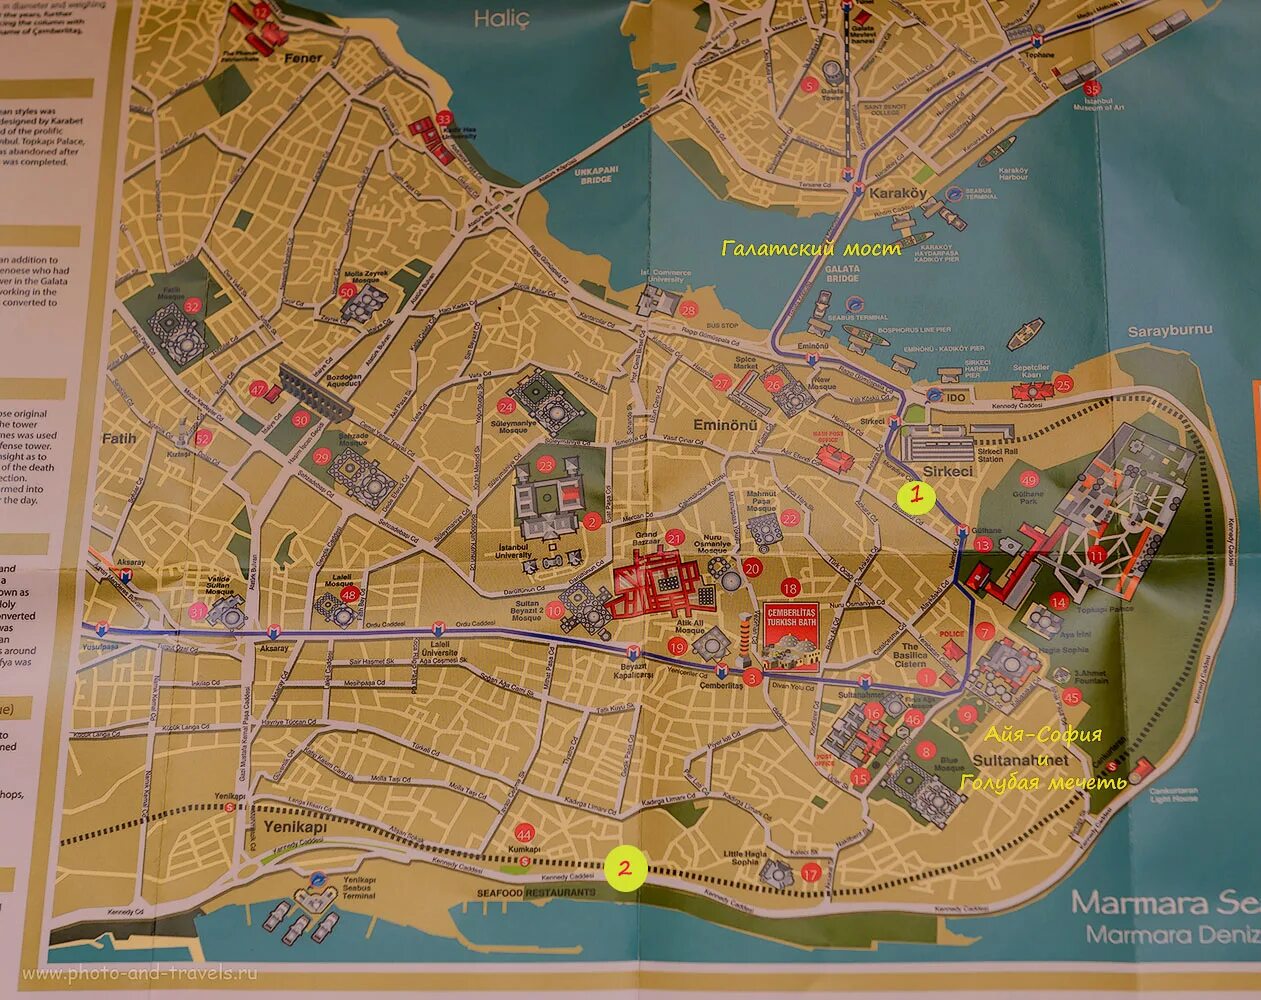 Карта стамбула. Туристическая карта Стамбула. Исторический центр Стамбула на карте. Достопримечательности Стамбула на карте. Карта центра Стамбула с достопримечательностями.